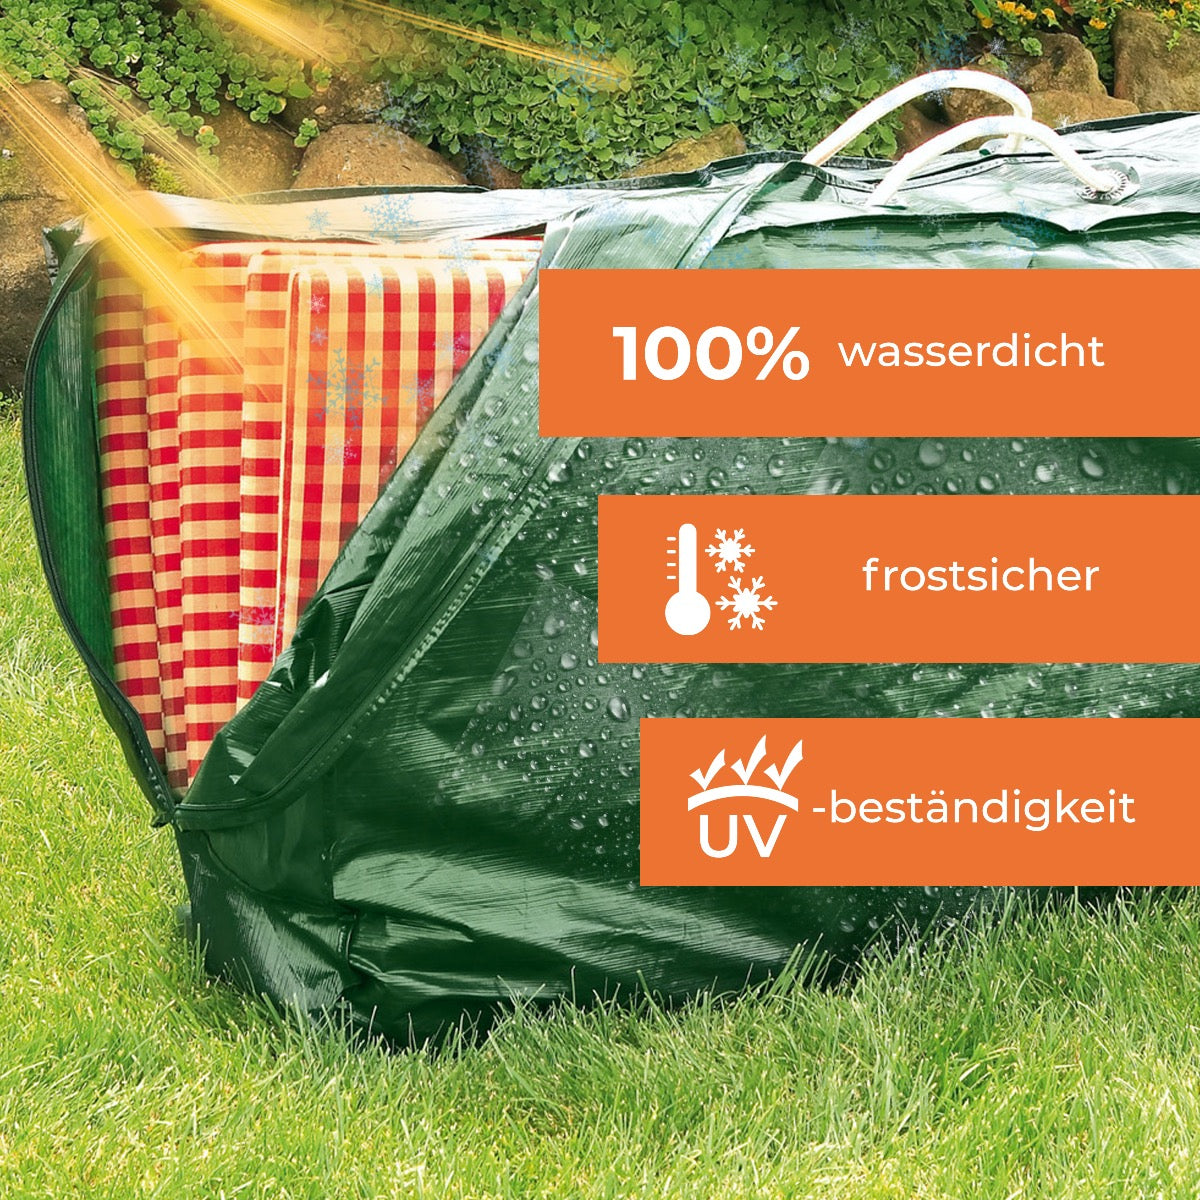 Rainexo Aufbewahrungshülle für Sitzkissen und Hochlehner-Auflagen - 100% wasserdicht, frostsicher und UV-beständig - grün